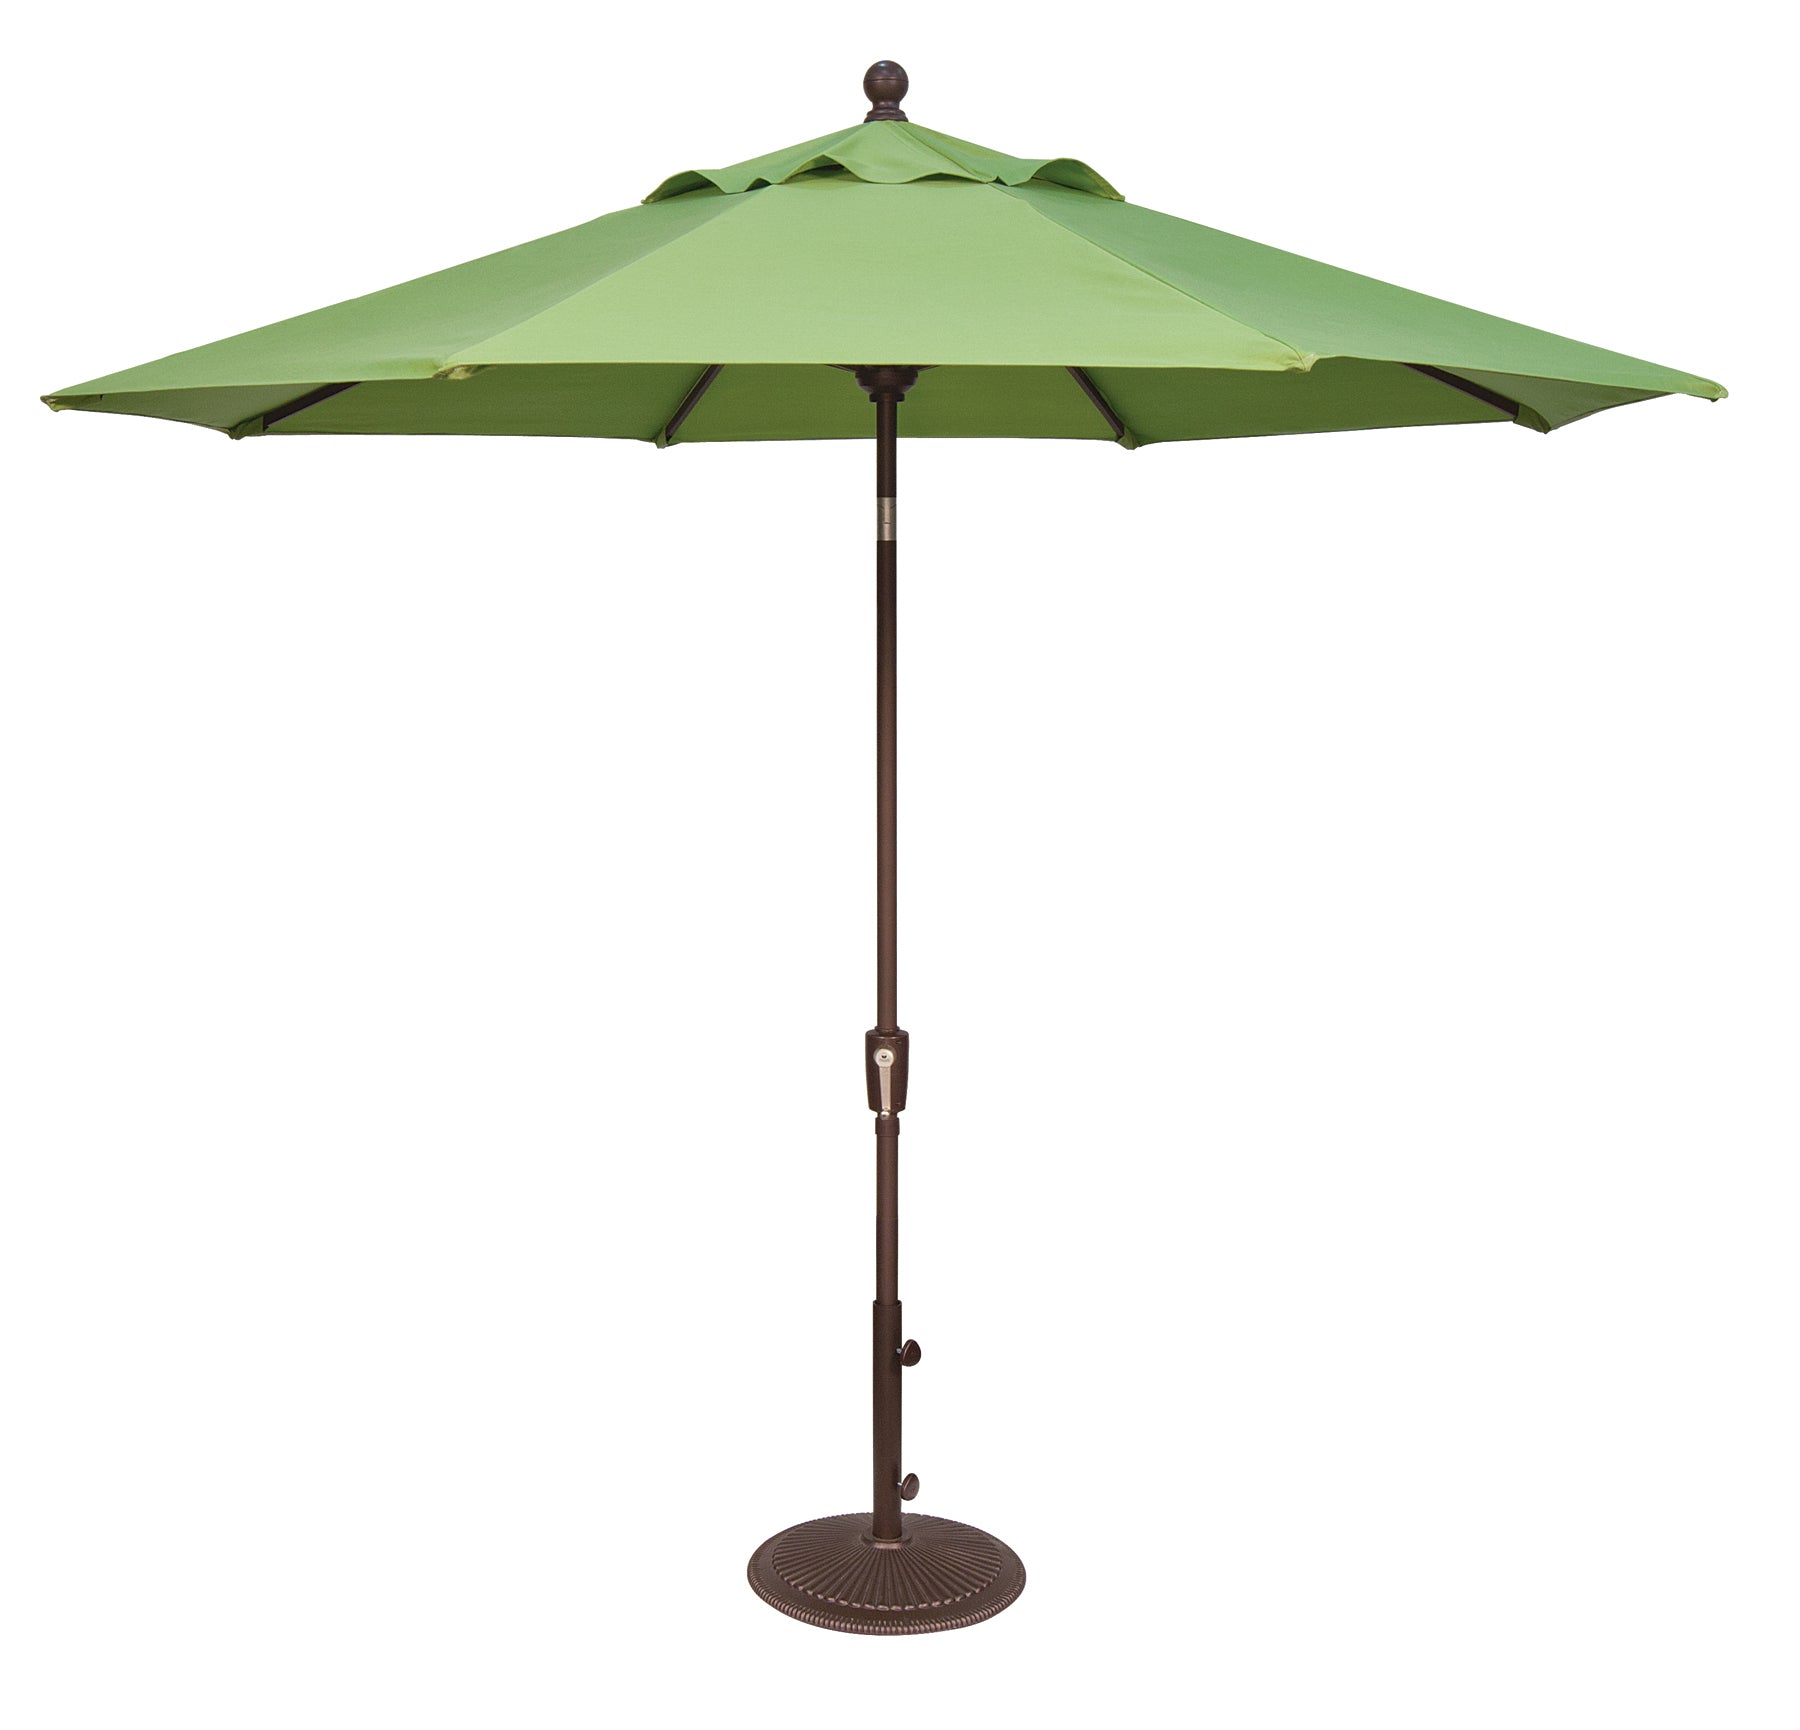 Treasure Garden 9' Octagon Push Button Tilt Umbrella with Bronze Frame Outdoor Umbrellas & Sunshade